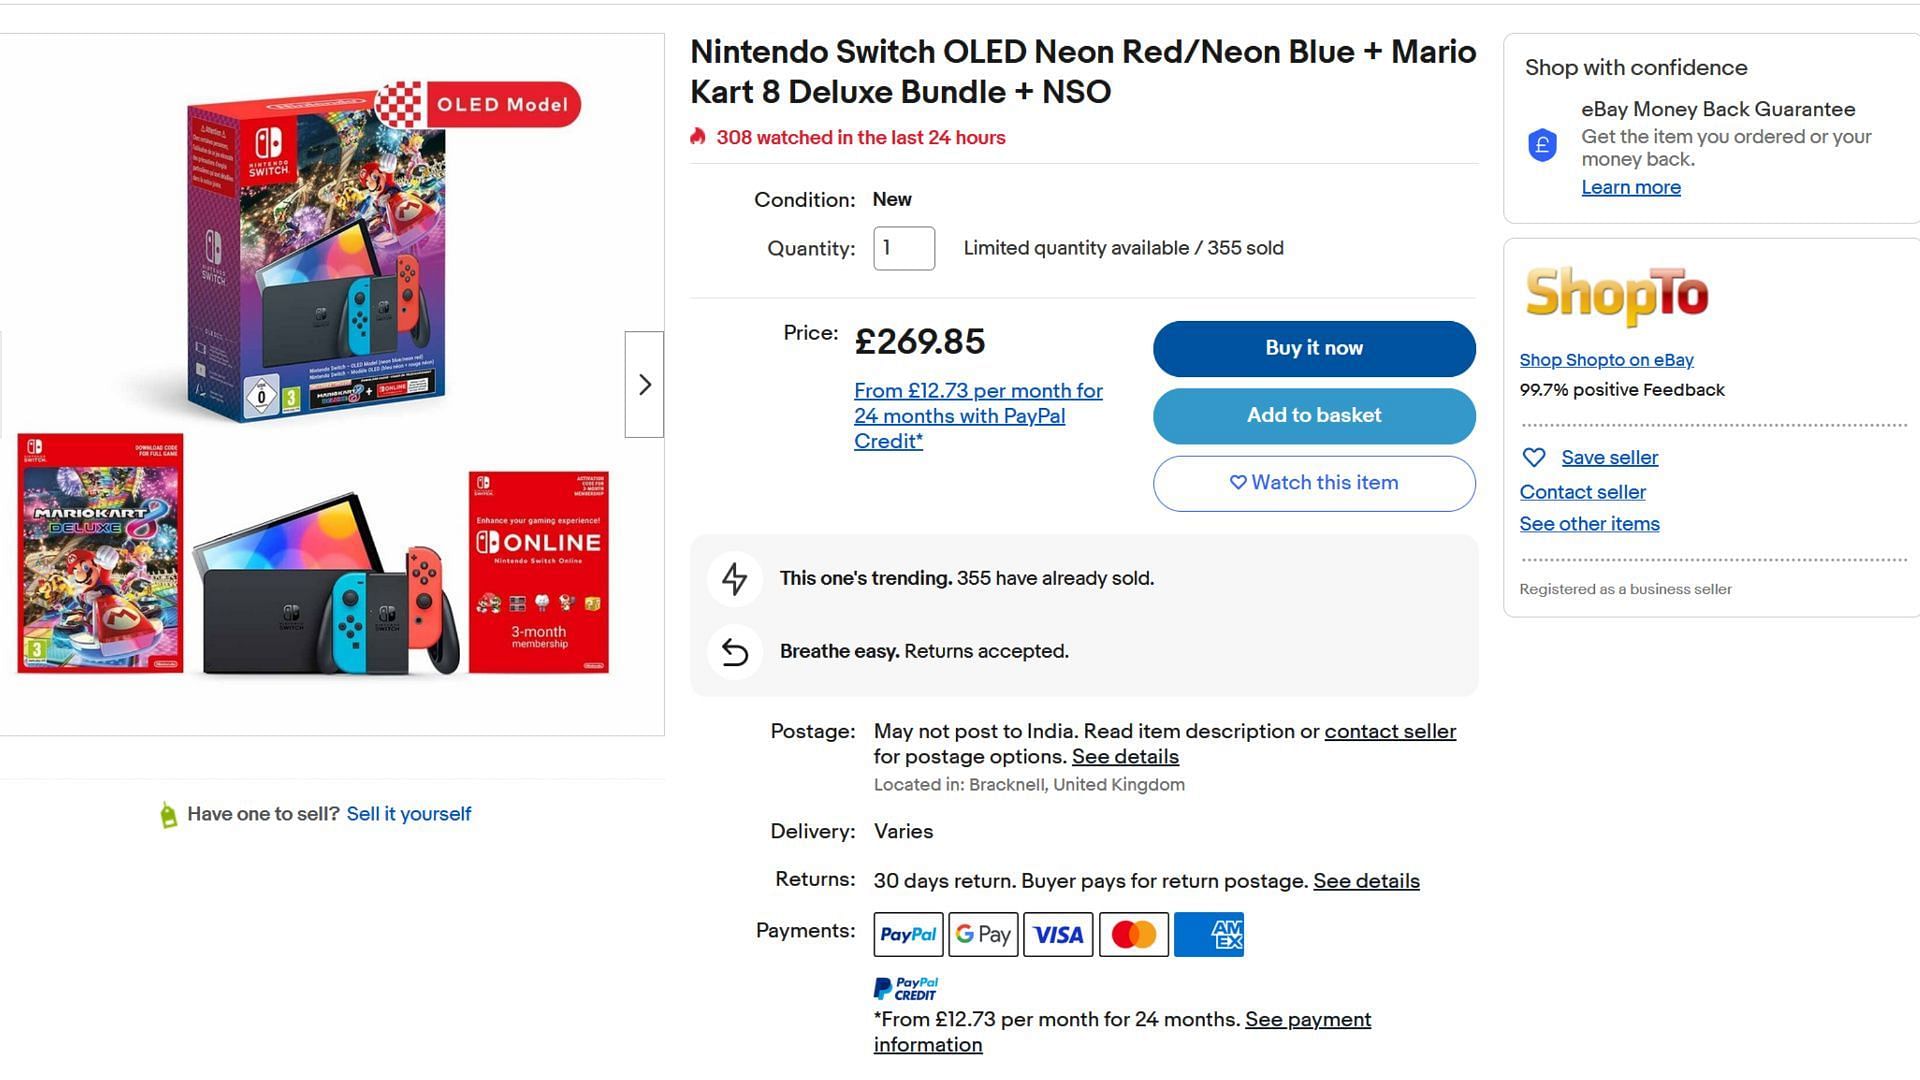 Mario Kart 8 Deluxe is one of the most popular Nintendo games yet (Screenshot via eBay)